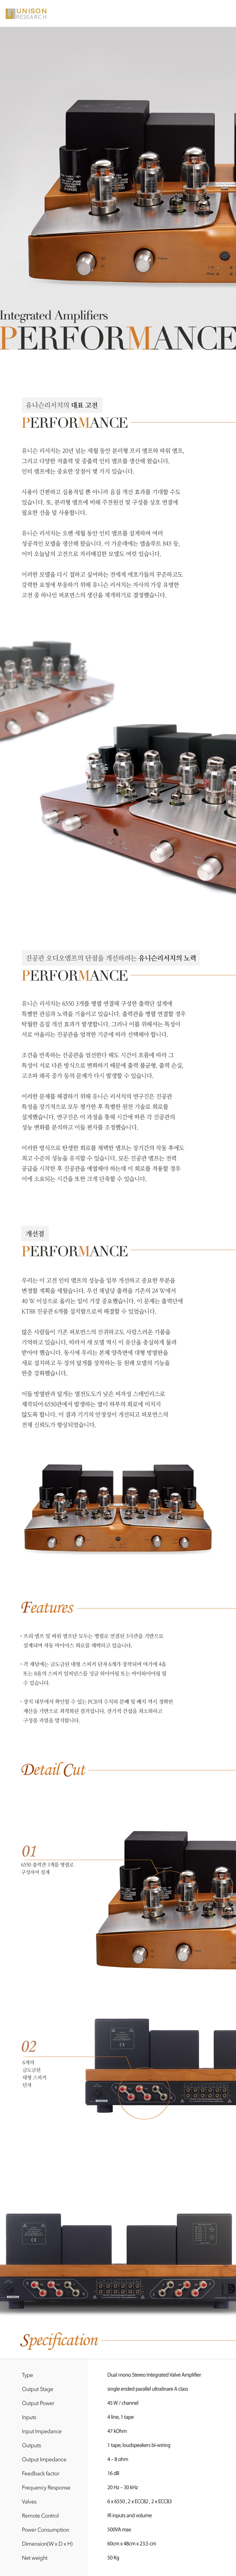 Performance_info_151234.jpg